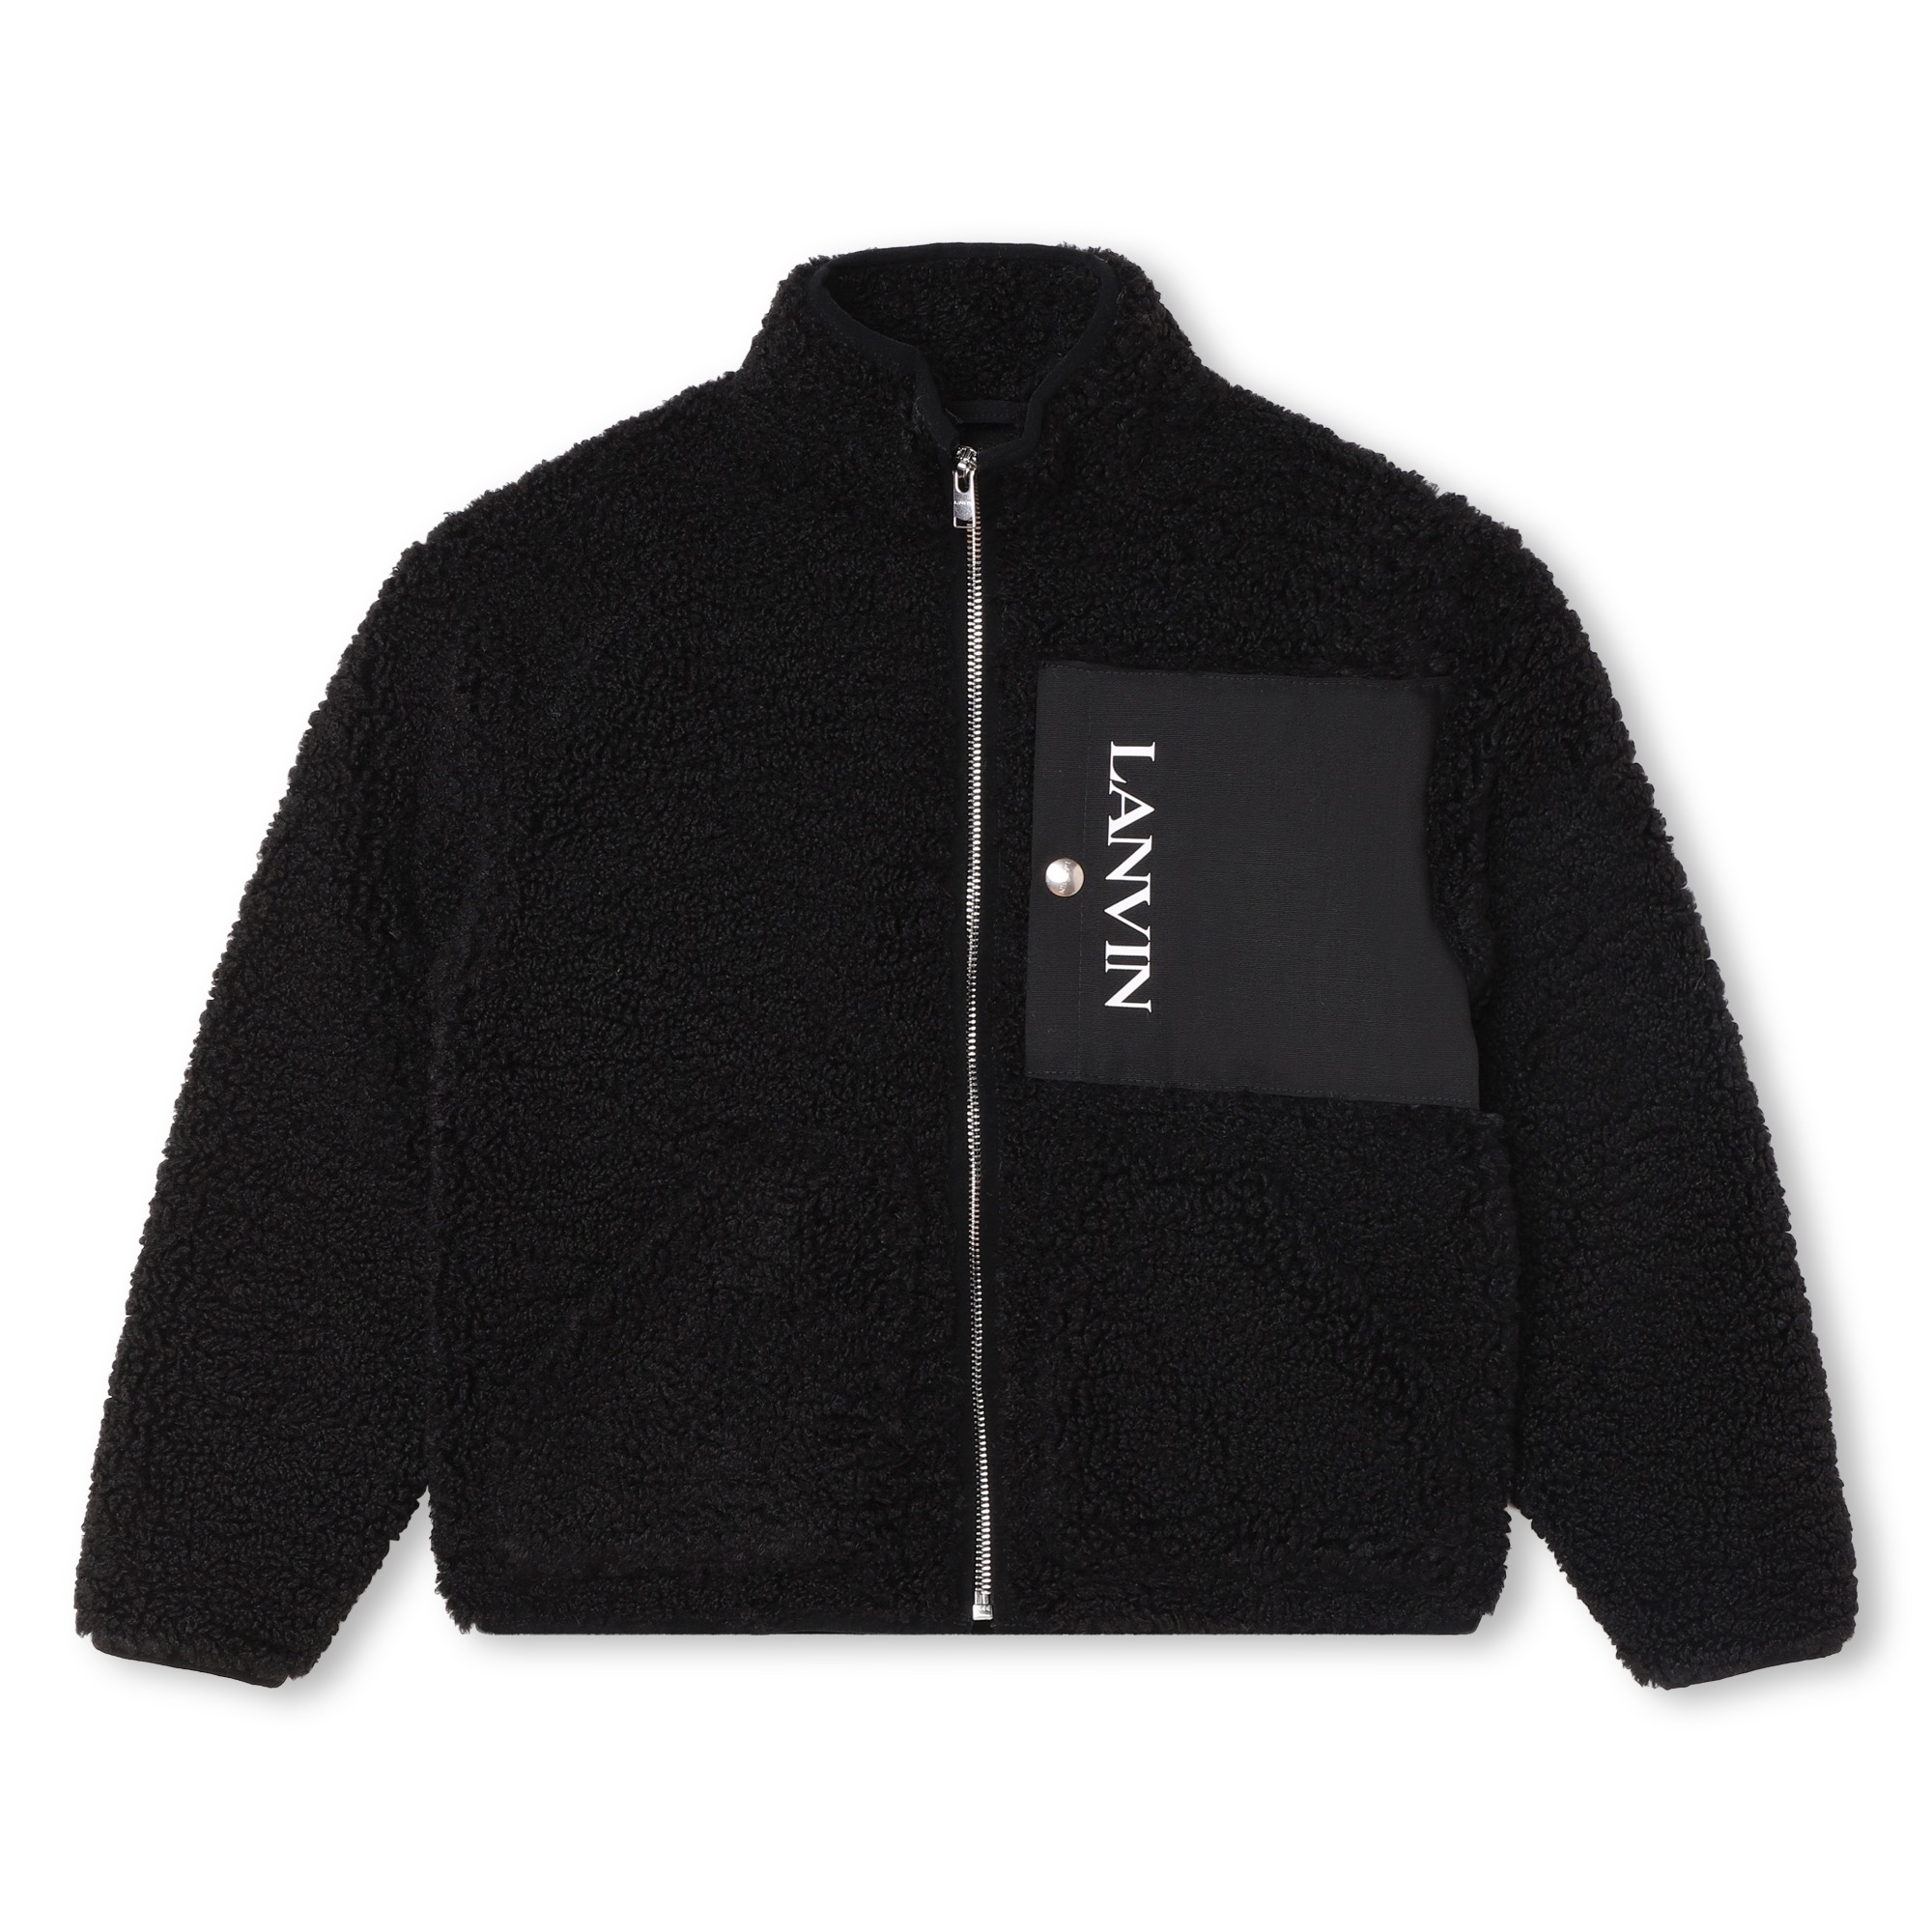 Chest pocket zip-up jacket LANVIN for BOY